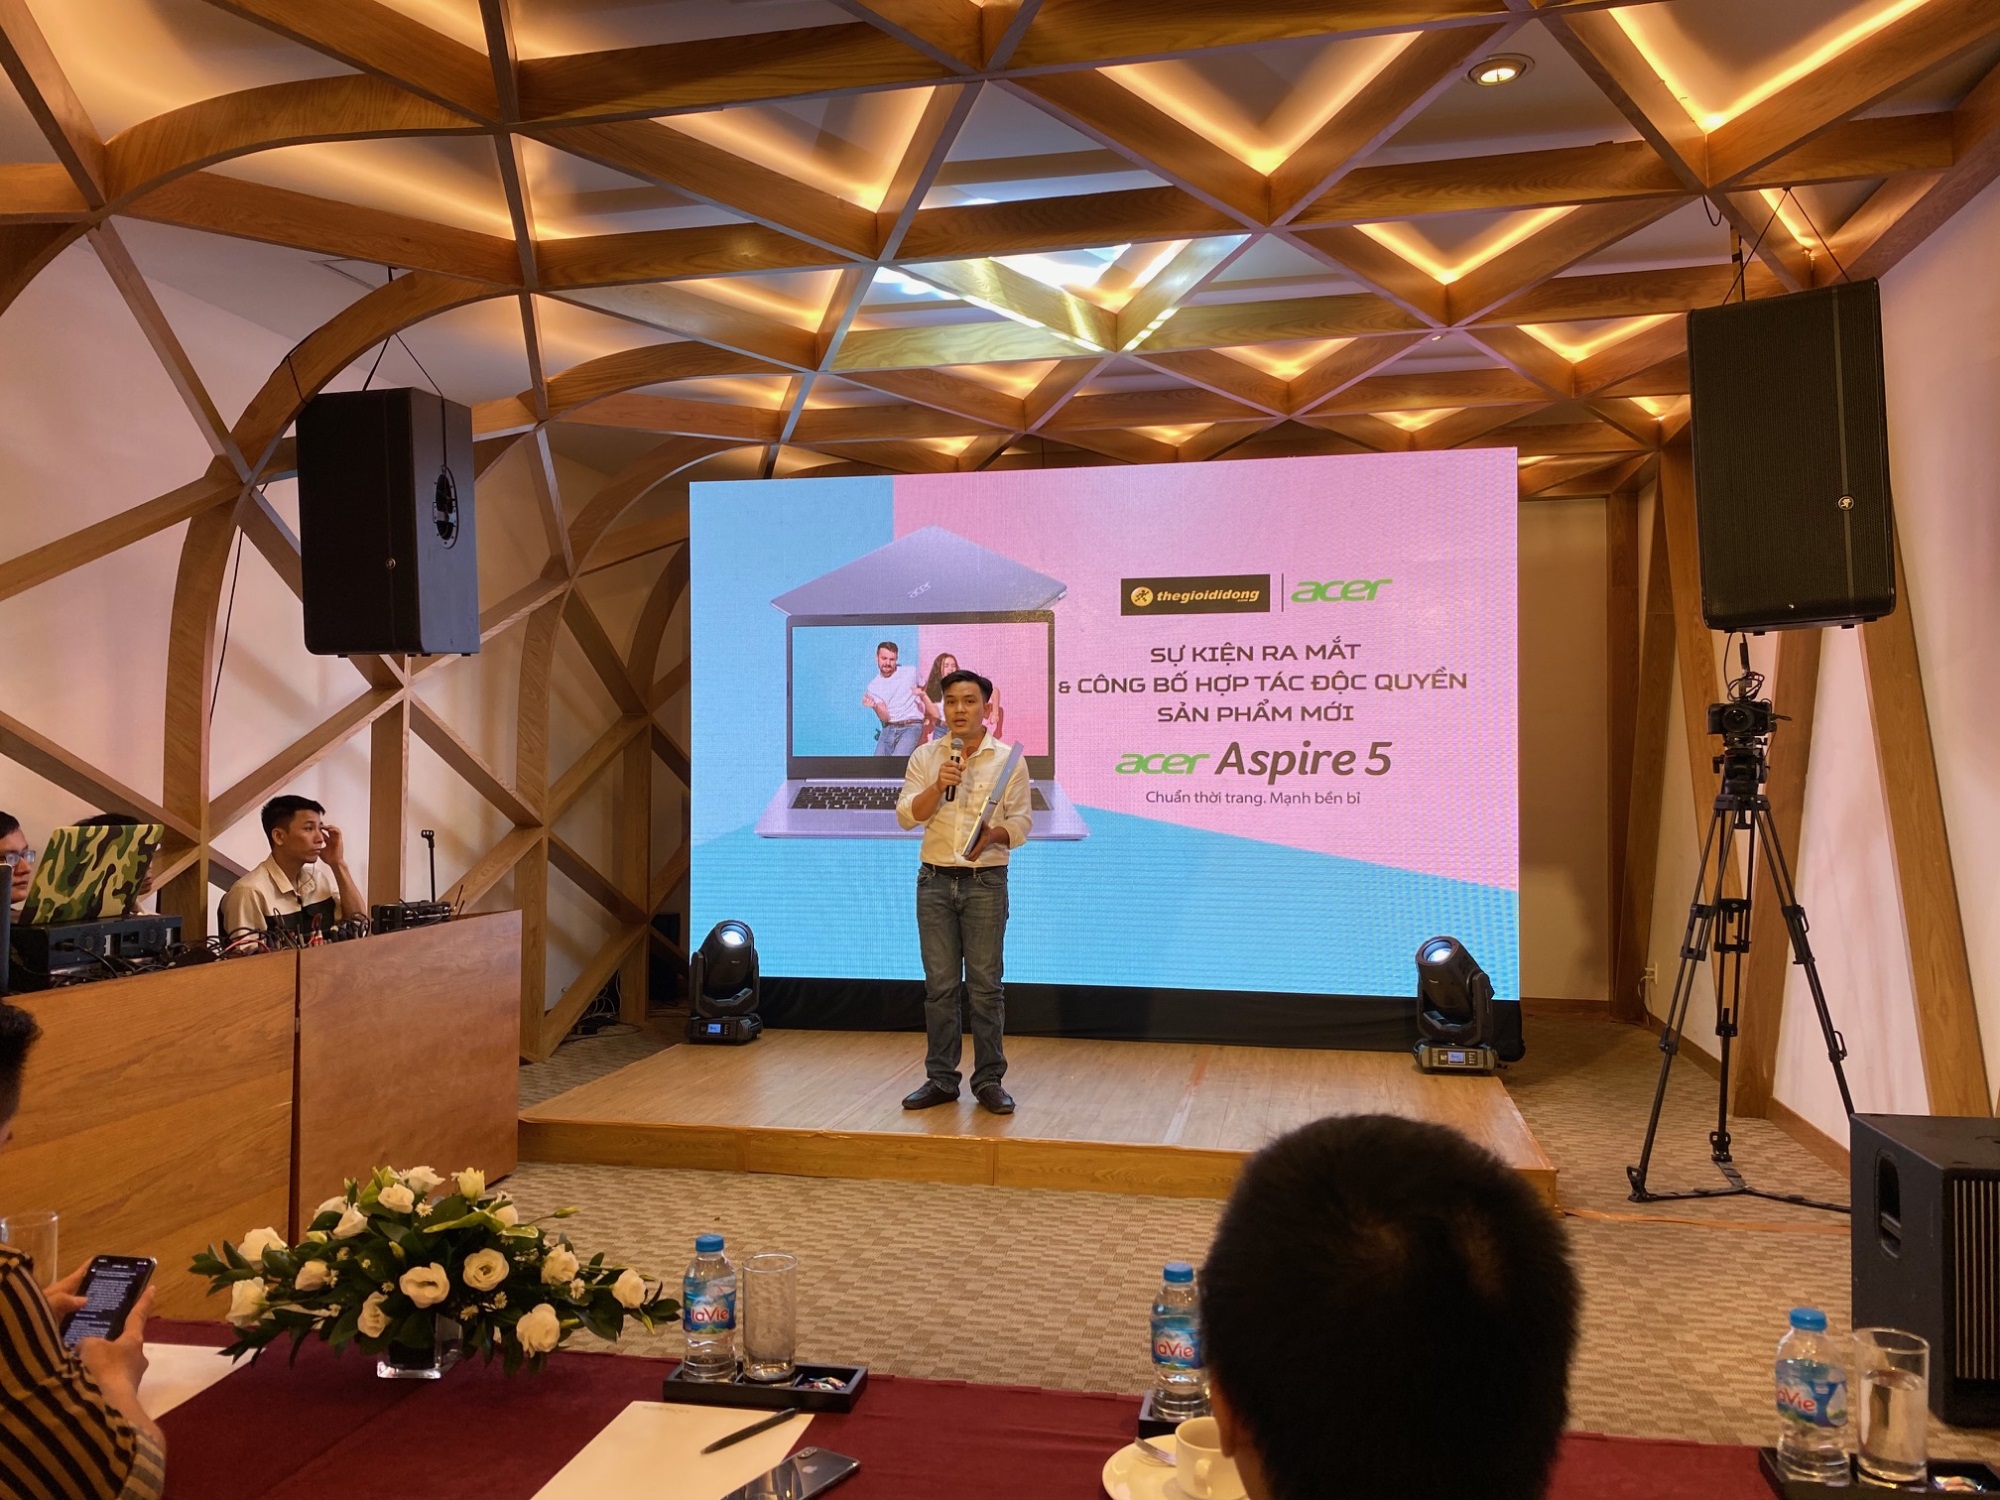 Thế Giới Di Động chính thức ra mắt và kinh doanh độc quyền laptop Acer Aspire 5